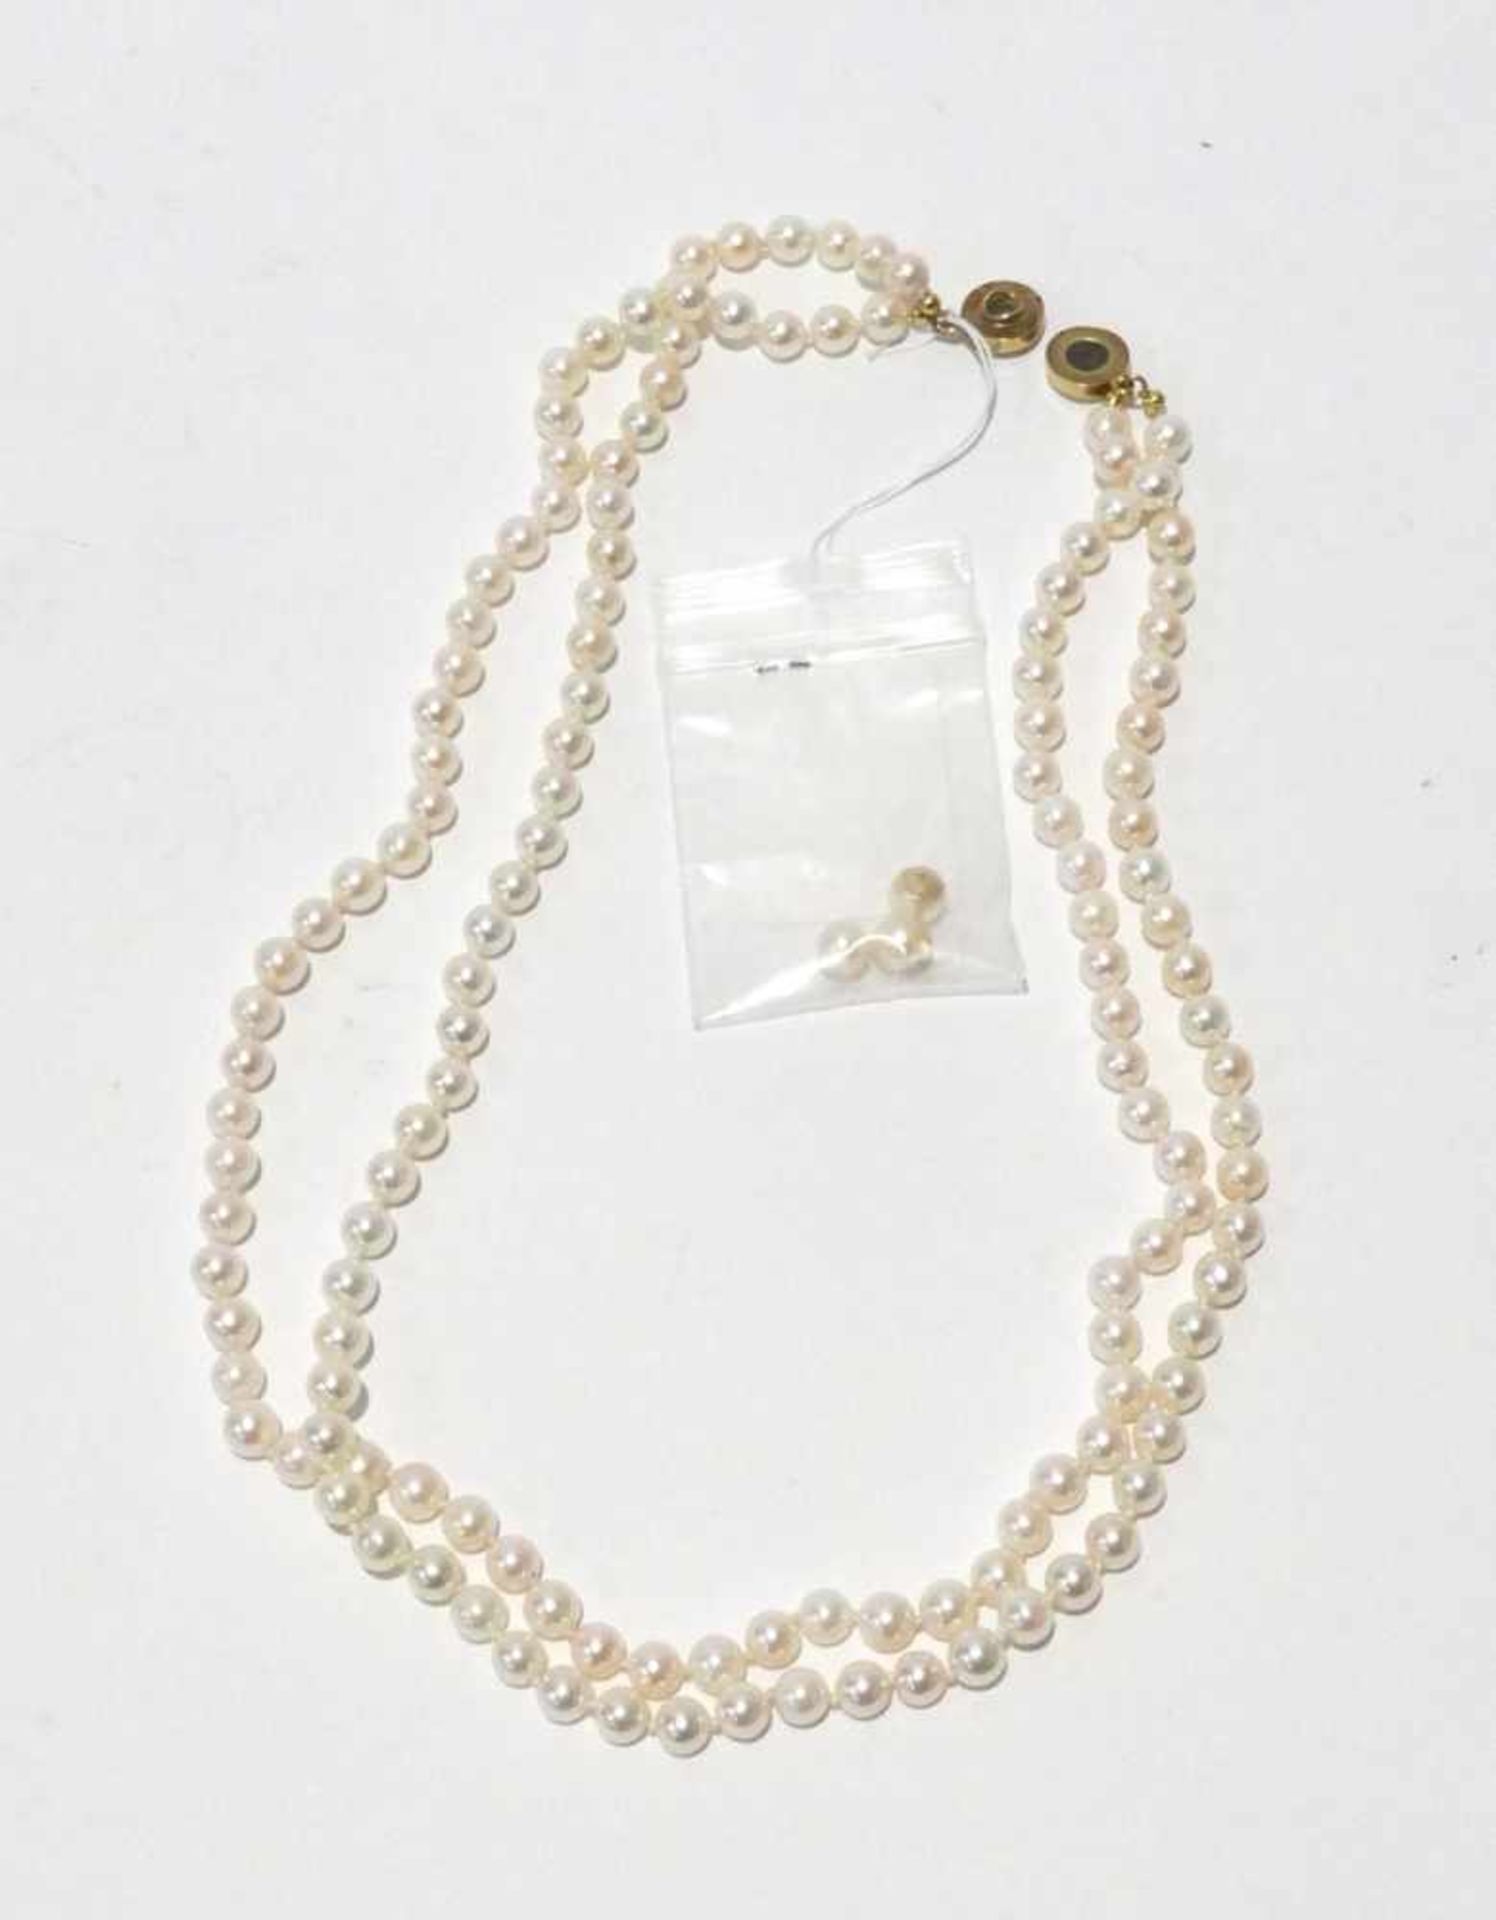 Zuchtperlenkette 2 reihig mit Perlen Durchmesser ca. 6mm, Farbe weiß bis rose, sehr feines Lüster,